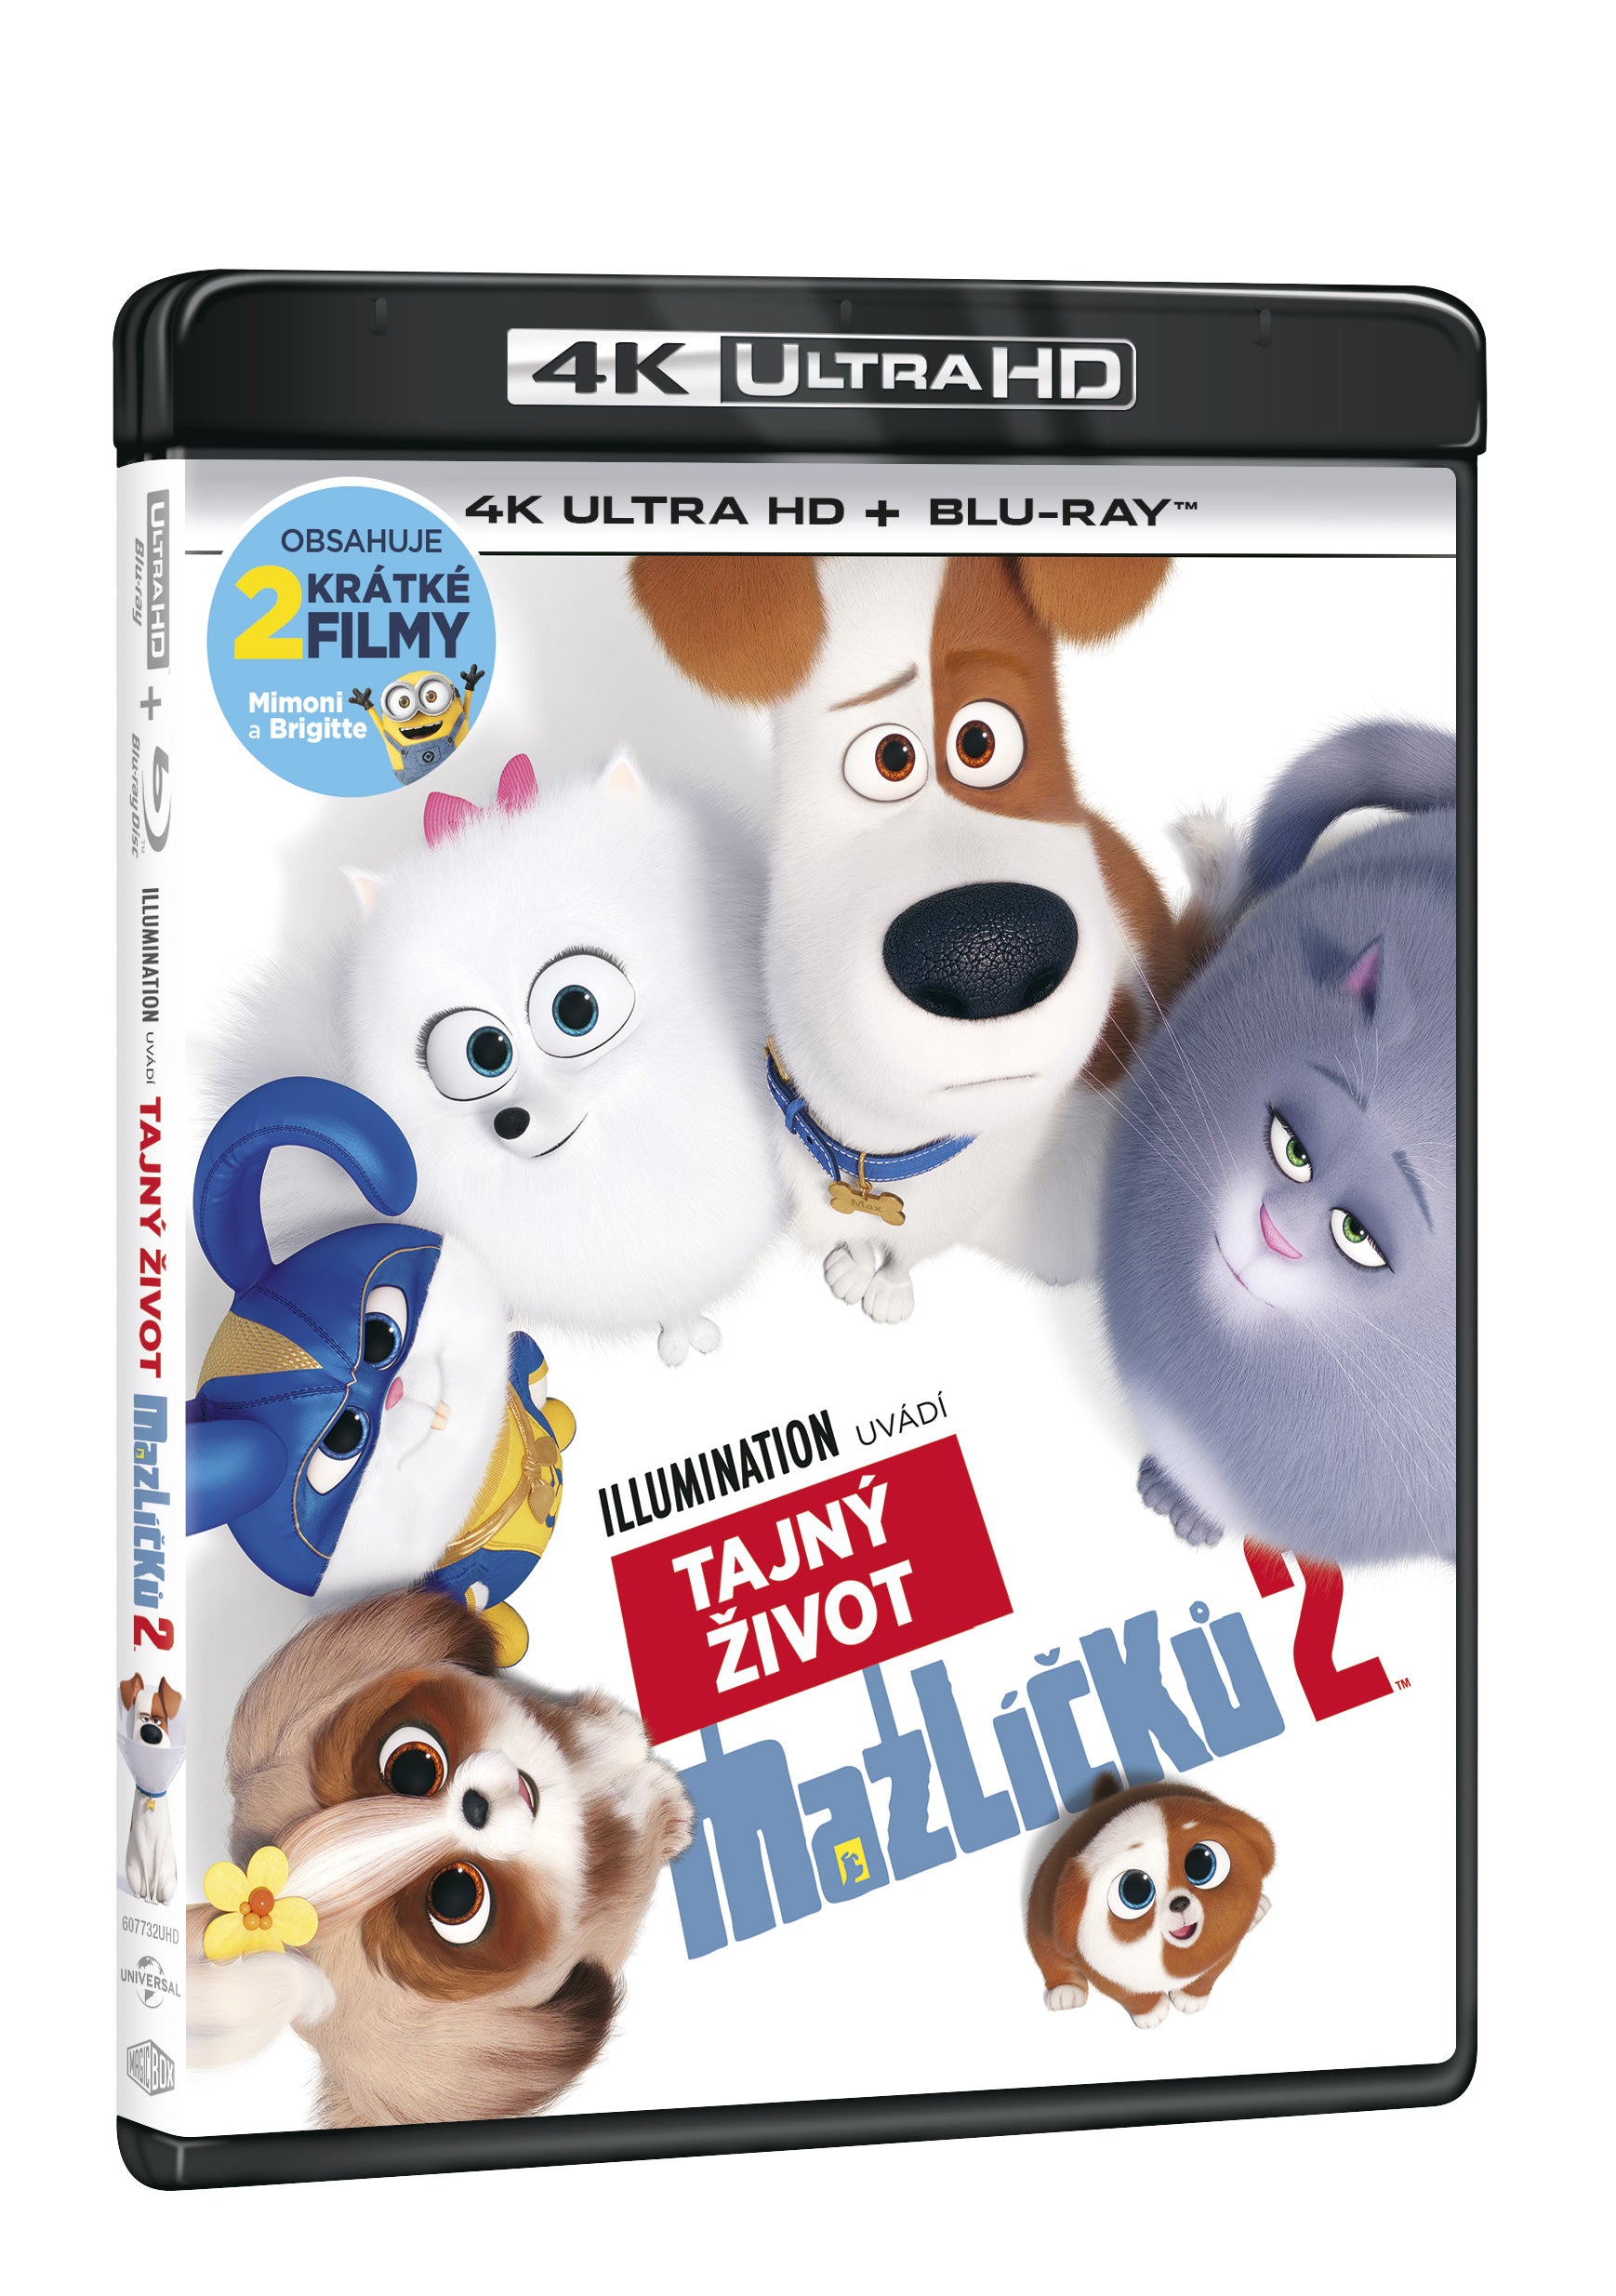 Tajny zivot mazlicku 2 2BD (UHD+BD) / Secret Life of Pets 2 - Czech version